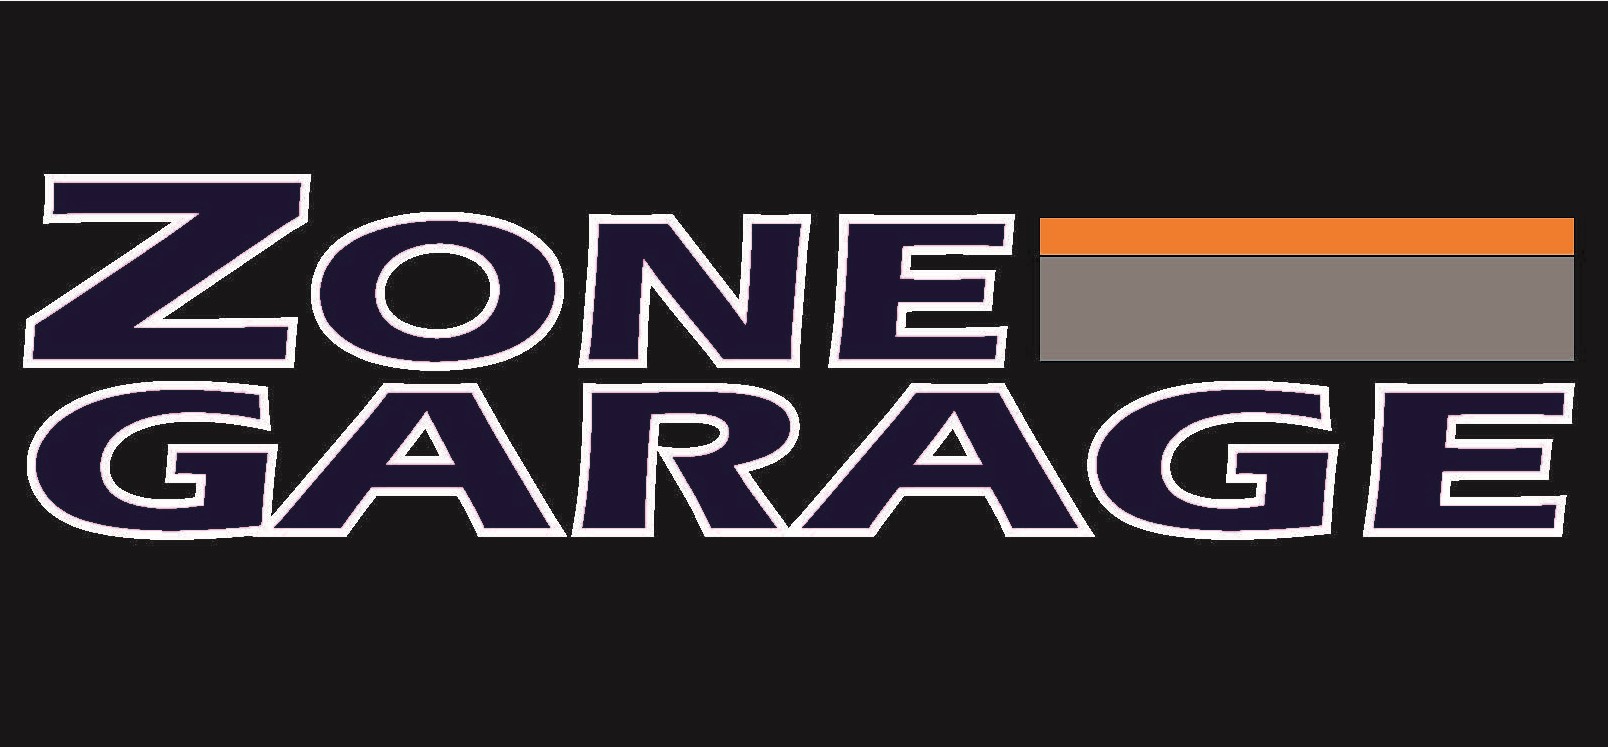 Zone Garage Denver Logo